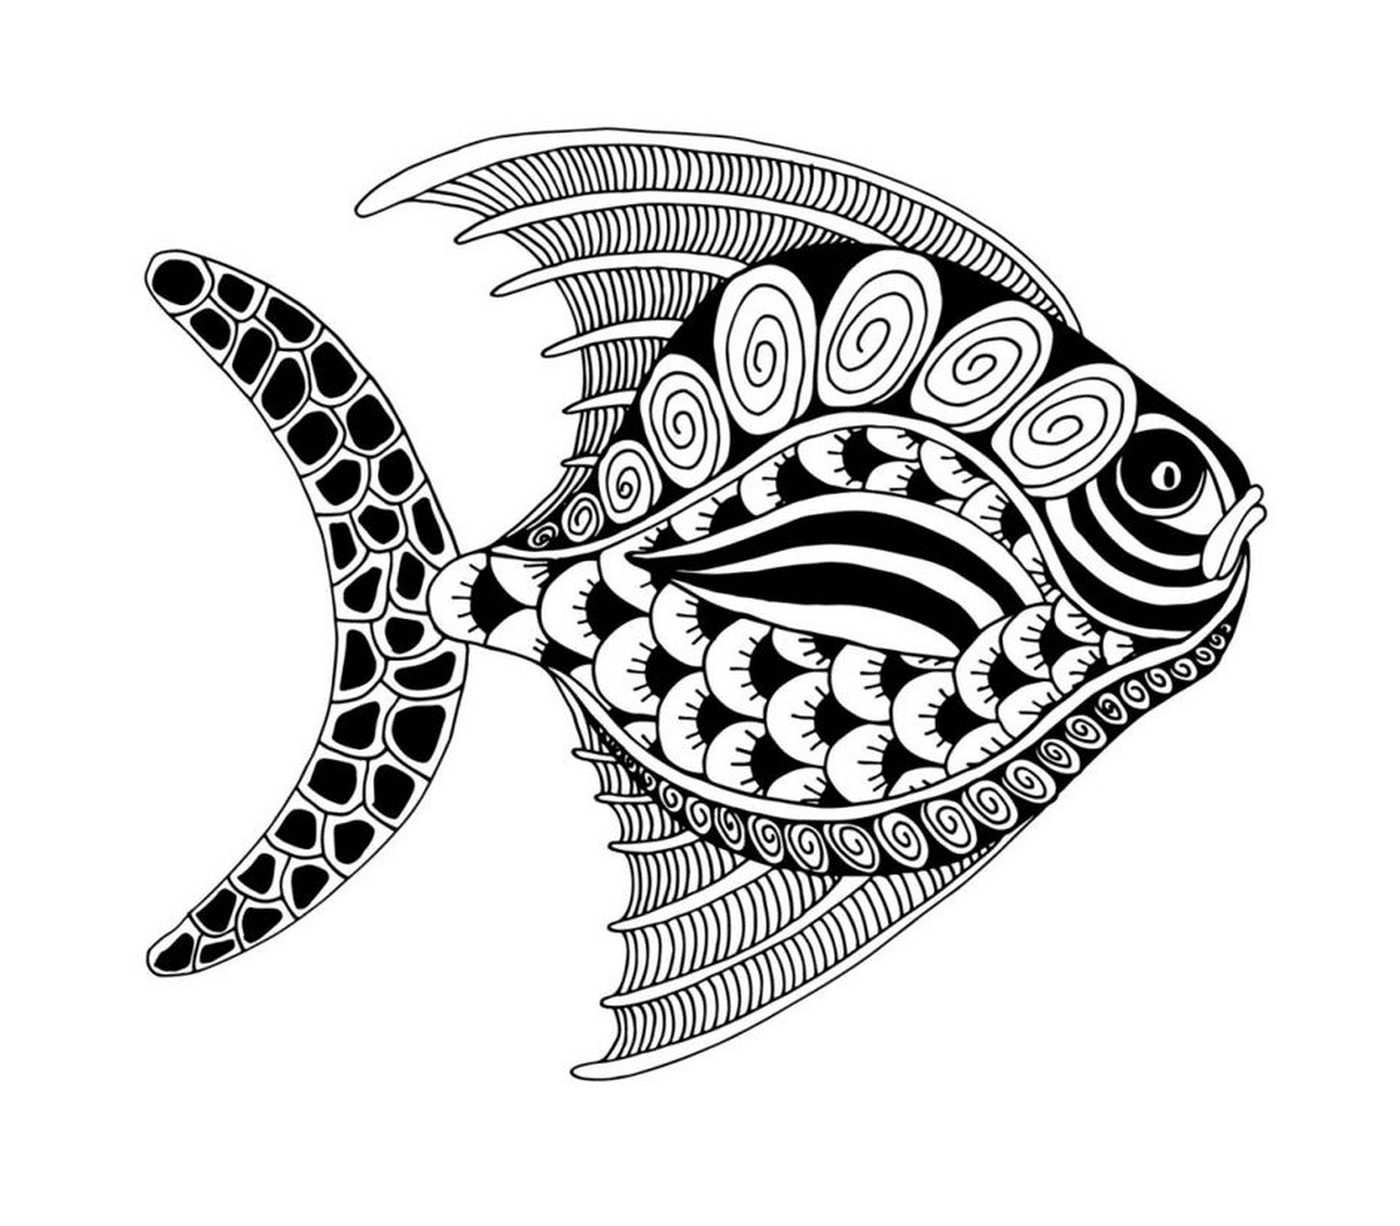  Um peixe preto e branco com um padrão 